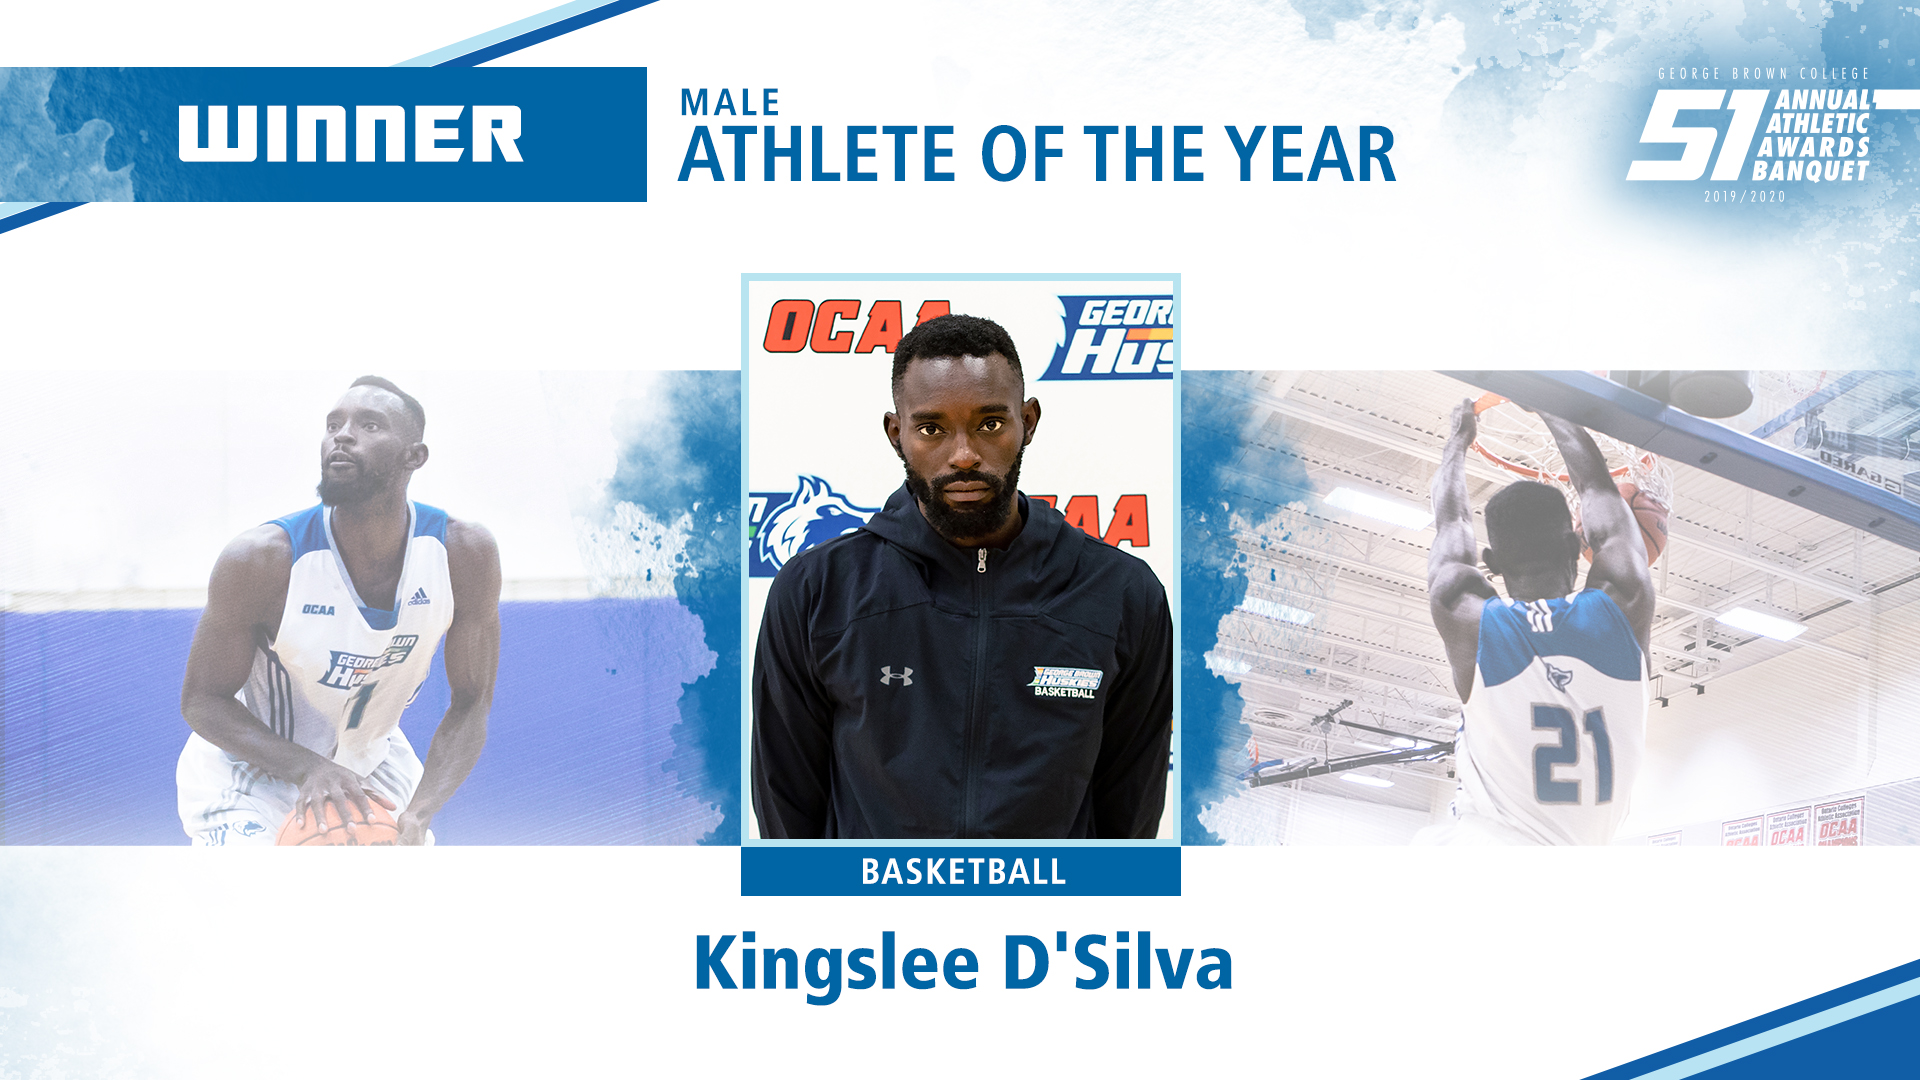 winnermale athlete of the yearbasketballKingslee D'Silva